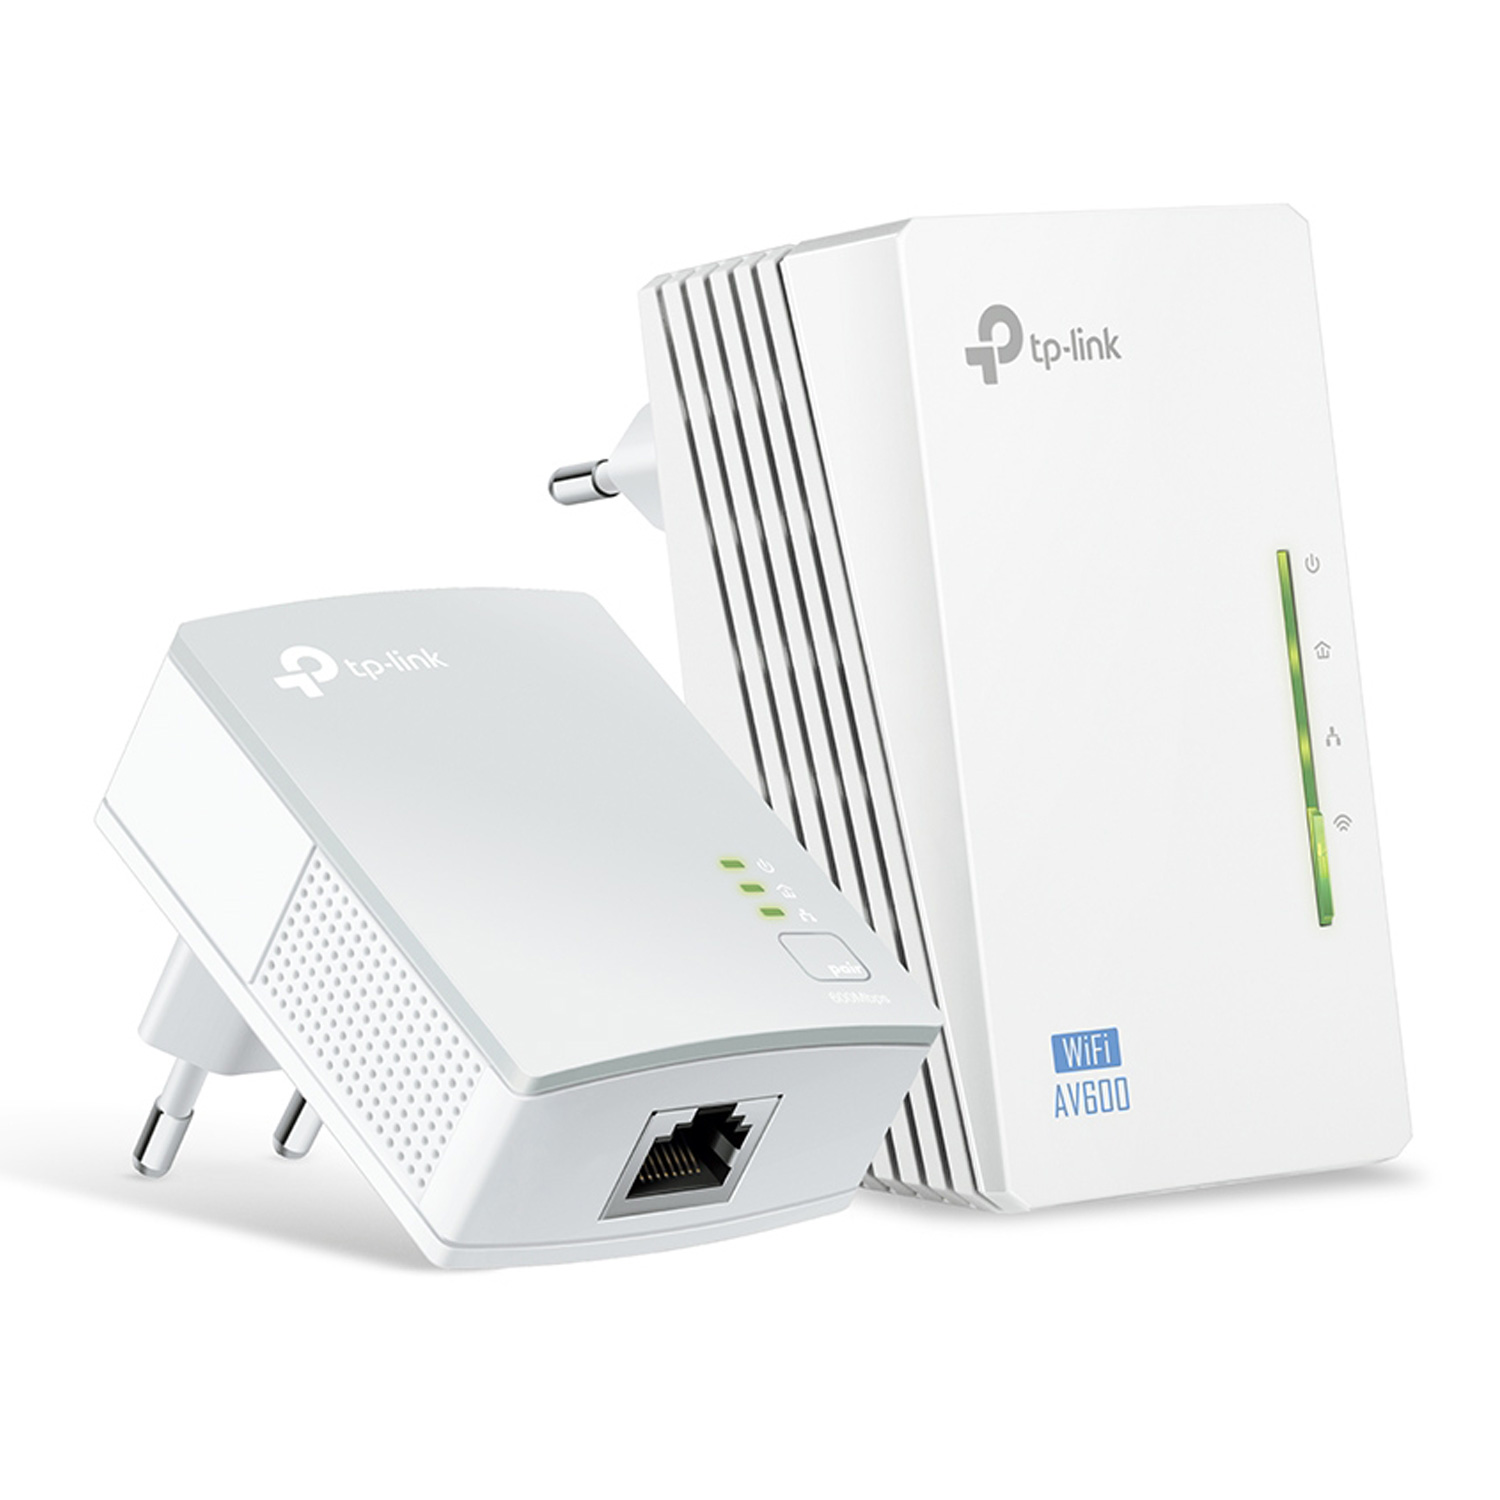 Extensor de Rede Tp-Link Powerline Wi-Fi Kit  AV600 - Branco (TL-WPA4220)